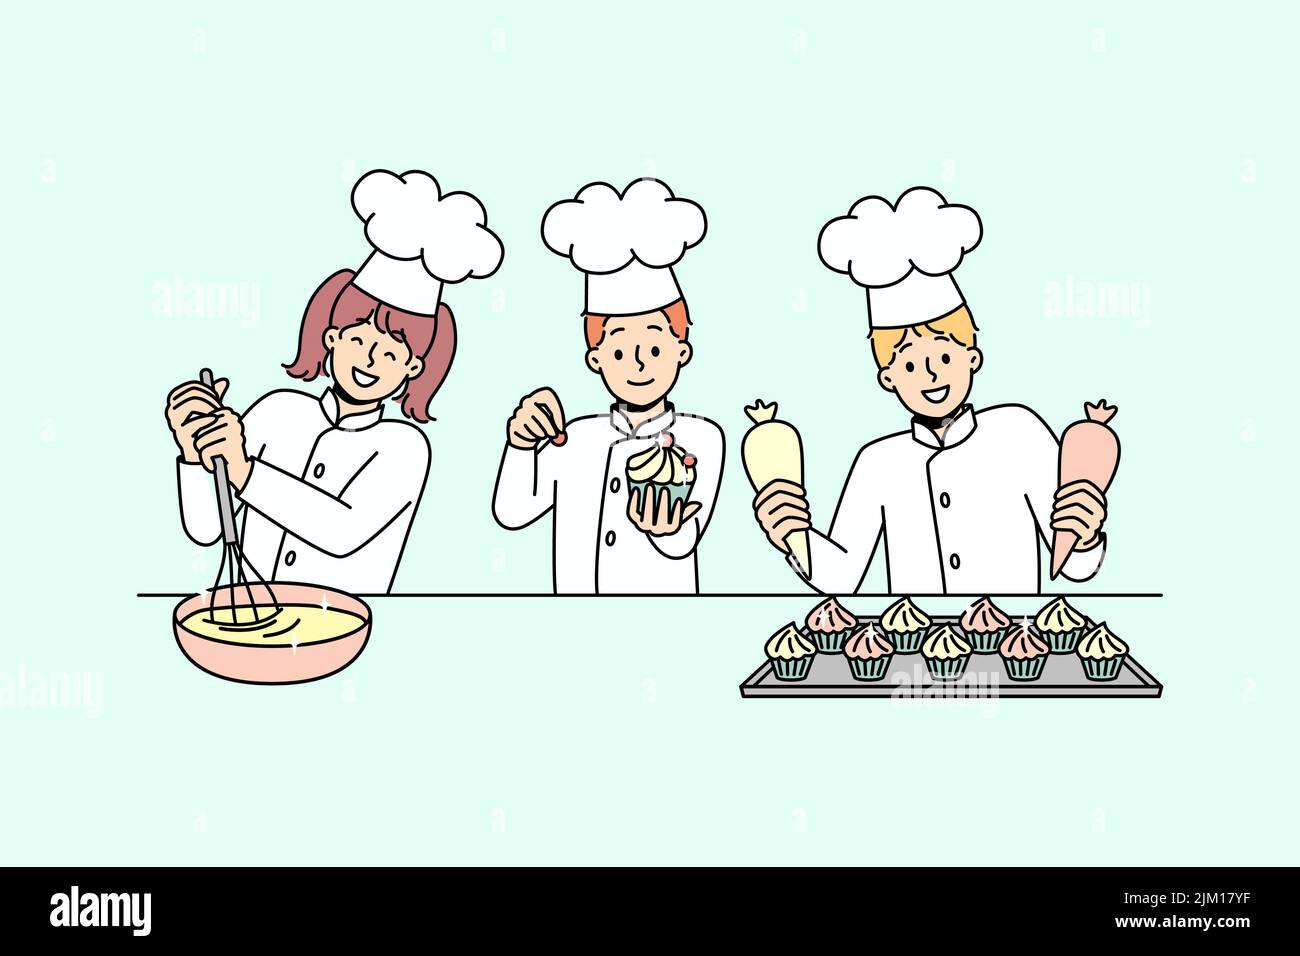 https://c8.alamy.com/comp/2JM17YF/little-kids-cooks-have-fun-baking-together-smiling-small-children-in-uniforms-cooking-preparing-desserts-at-kitchen-workshop-or-future-profession-vector-illustration-2JM17YF.jpg